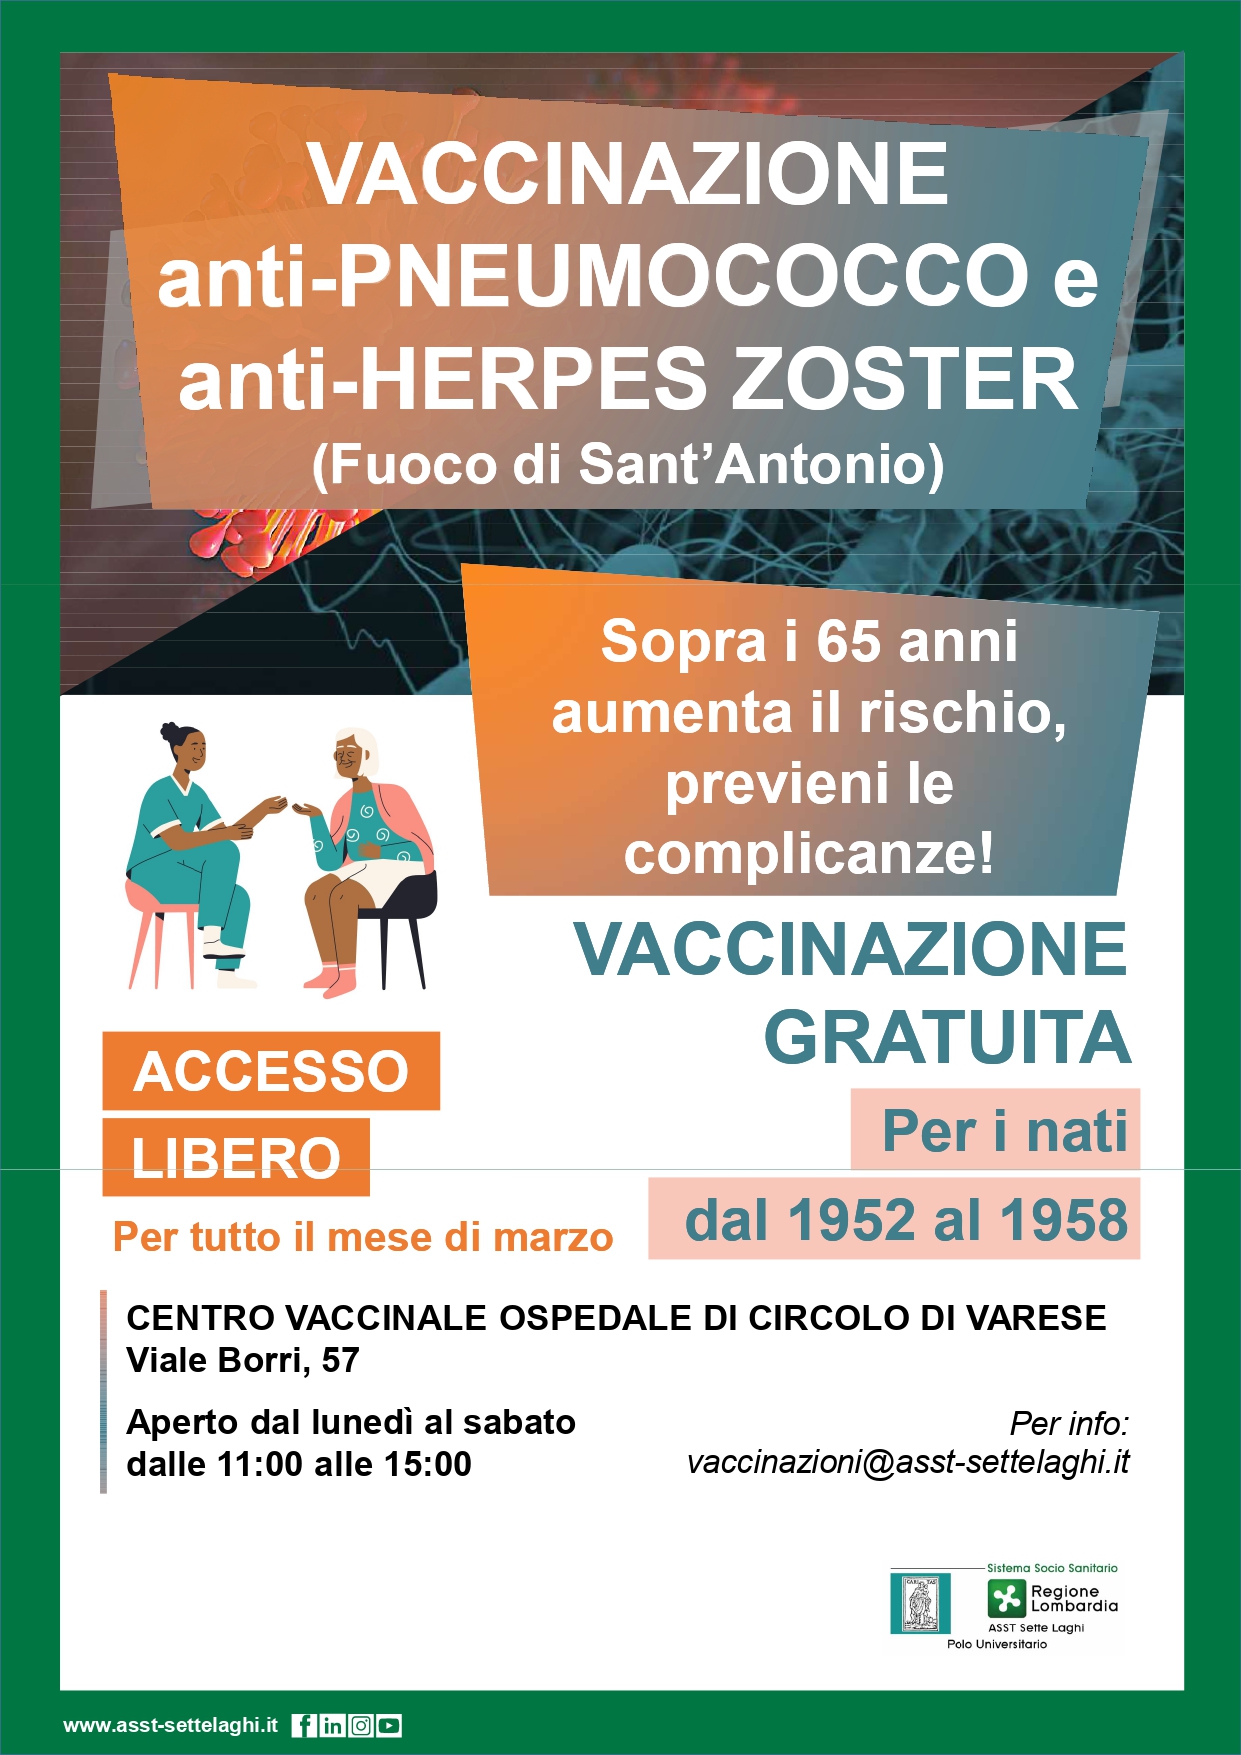 Vaccinazioni Anti Herpes Zoster (fuoco di Sant'Antonio) e Anti pneumococco